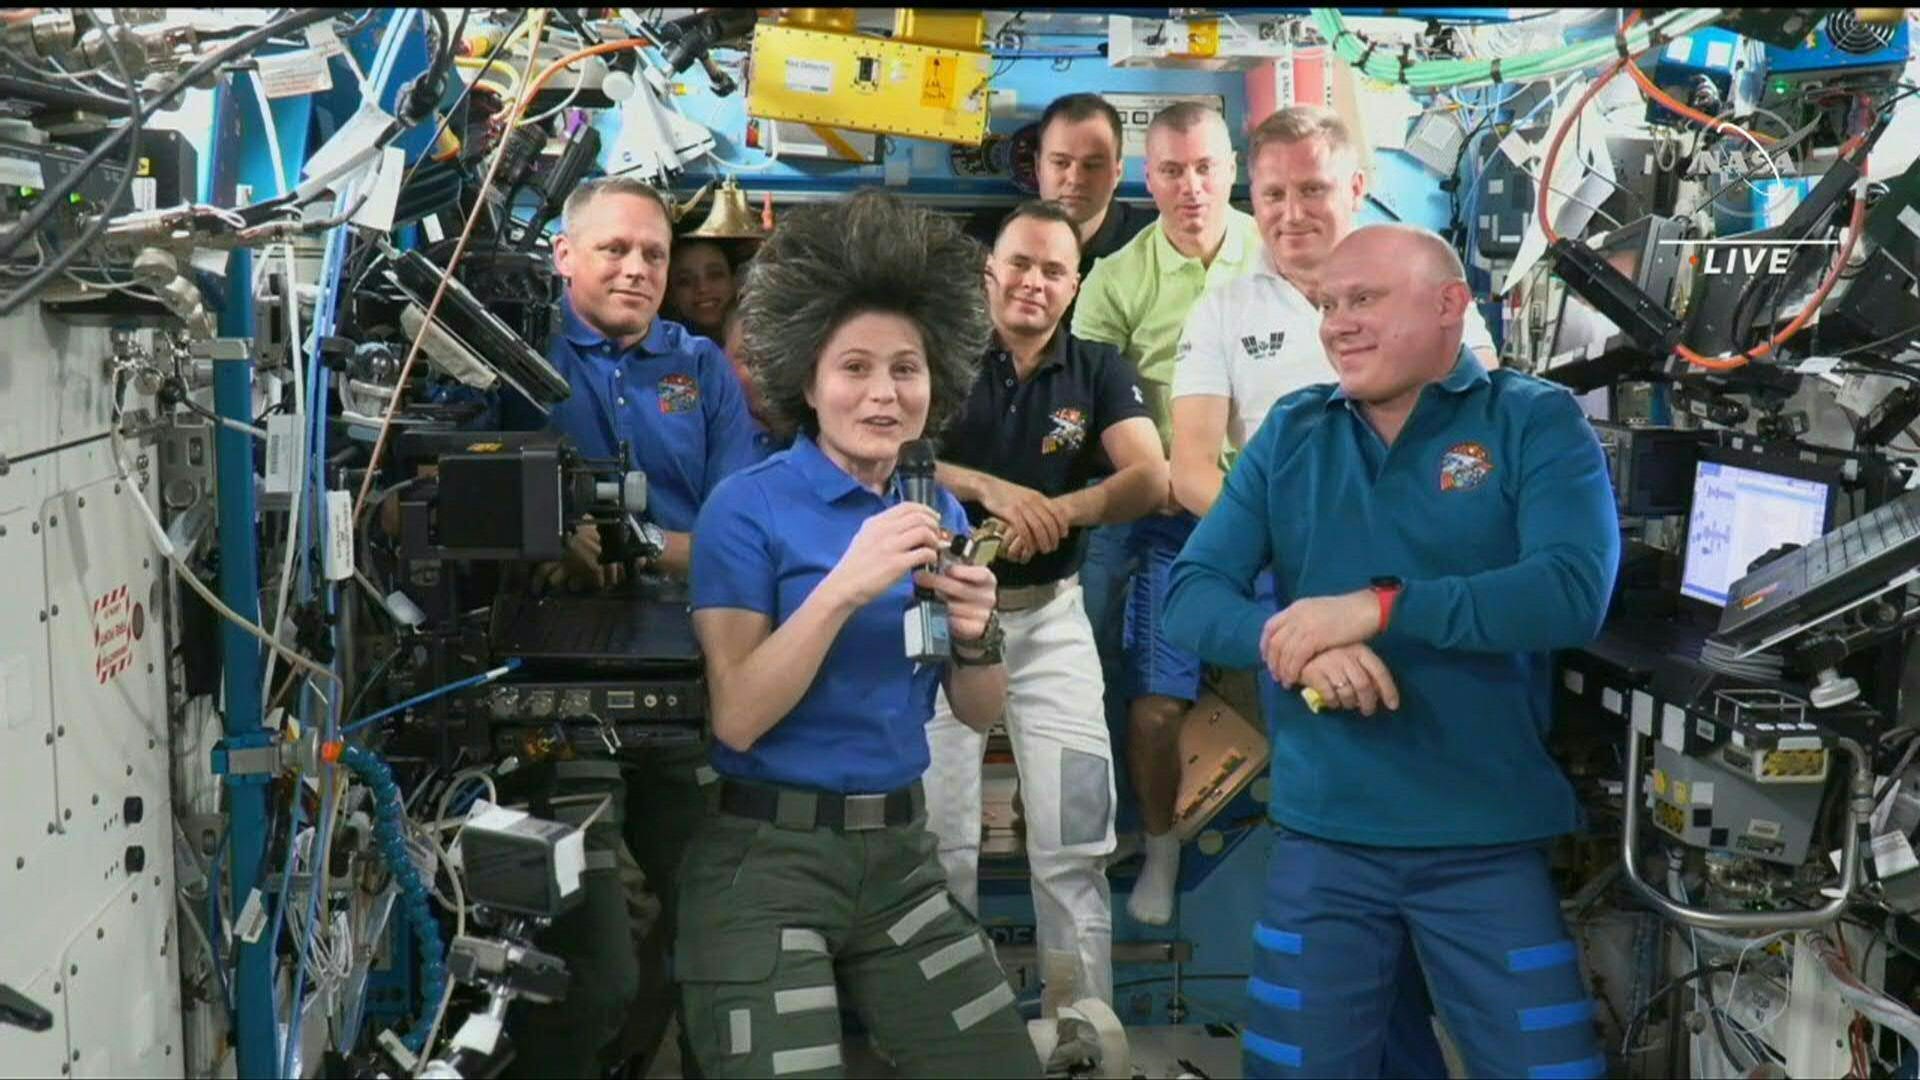 La astronauta italiana Samantha Cristoforetti se convirtió en la primera europea en tomar el mando de la Estación Espacial Internacional EEI), y la ceremonia fue retransmitida en directo (AFP)